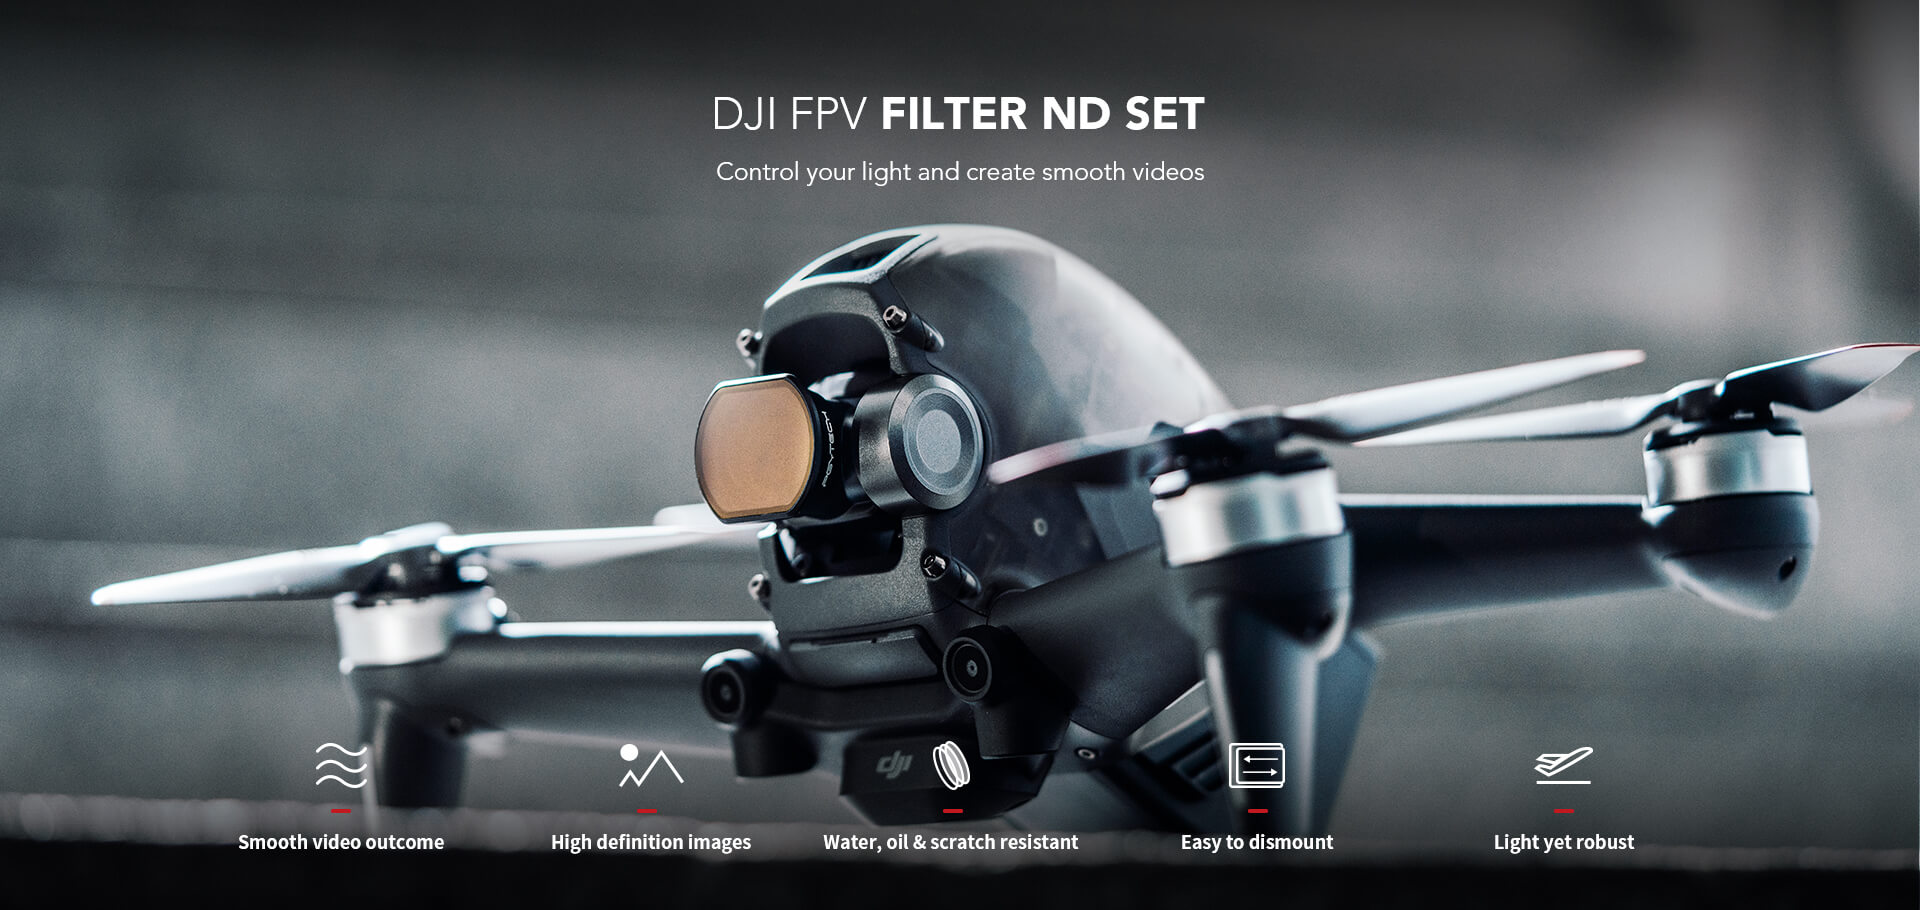 Kính-lọc-filter-DJI-FPV-Drone-DJI-FPV-Filter-ND-set 4/8/16-PGYtech